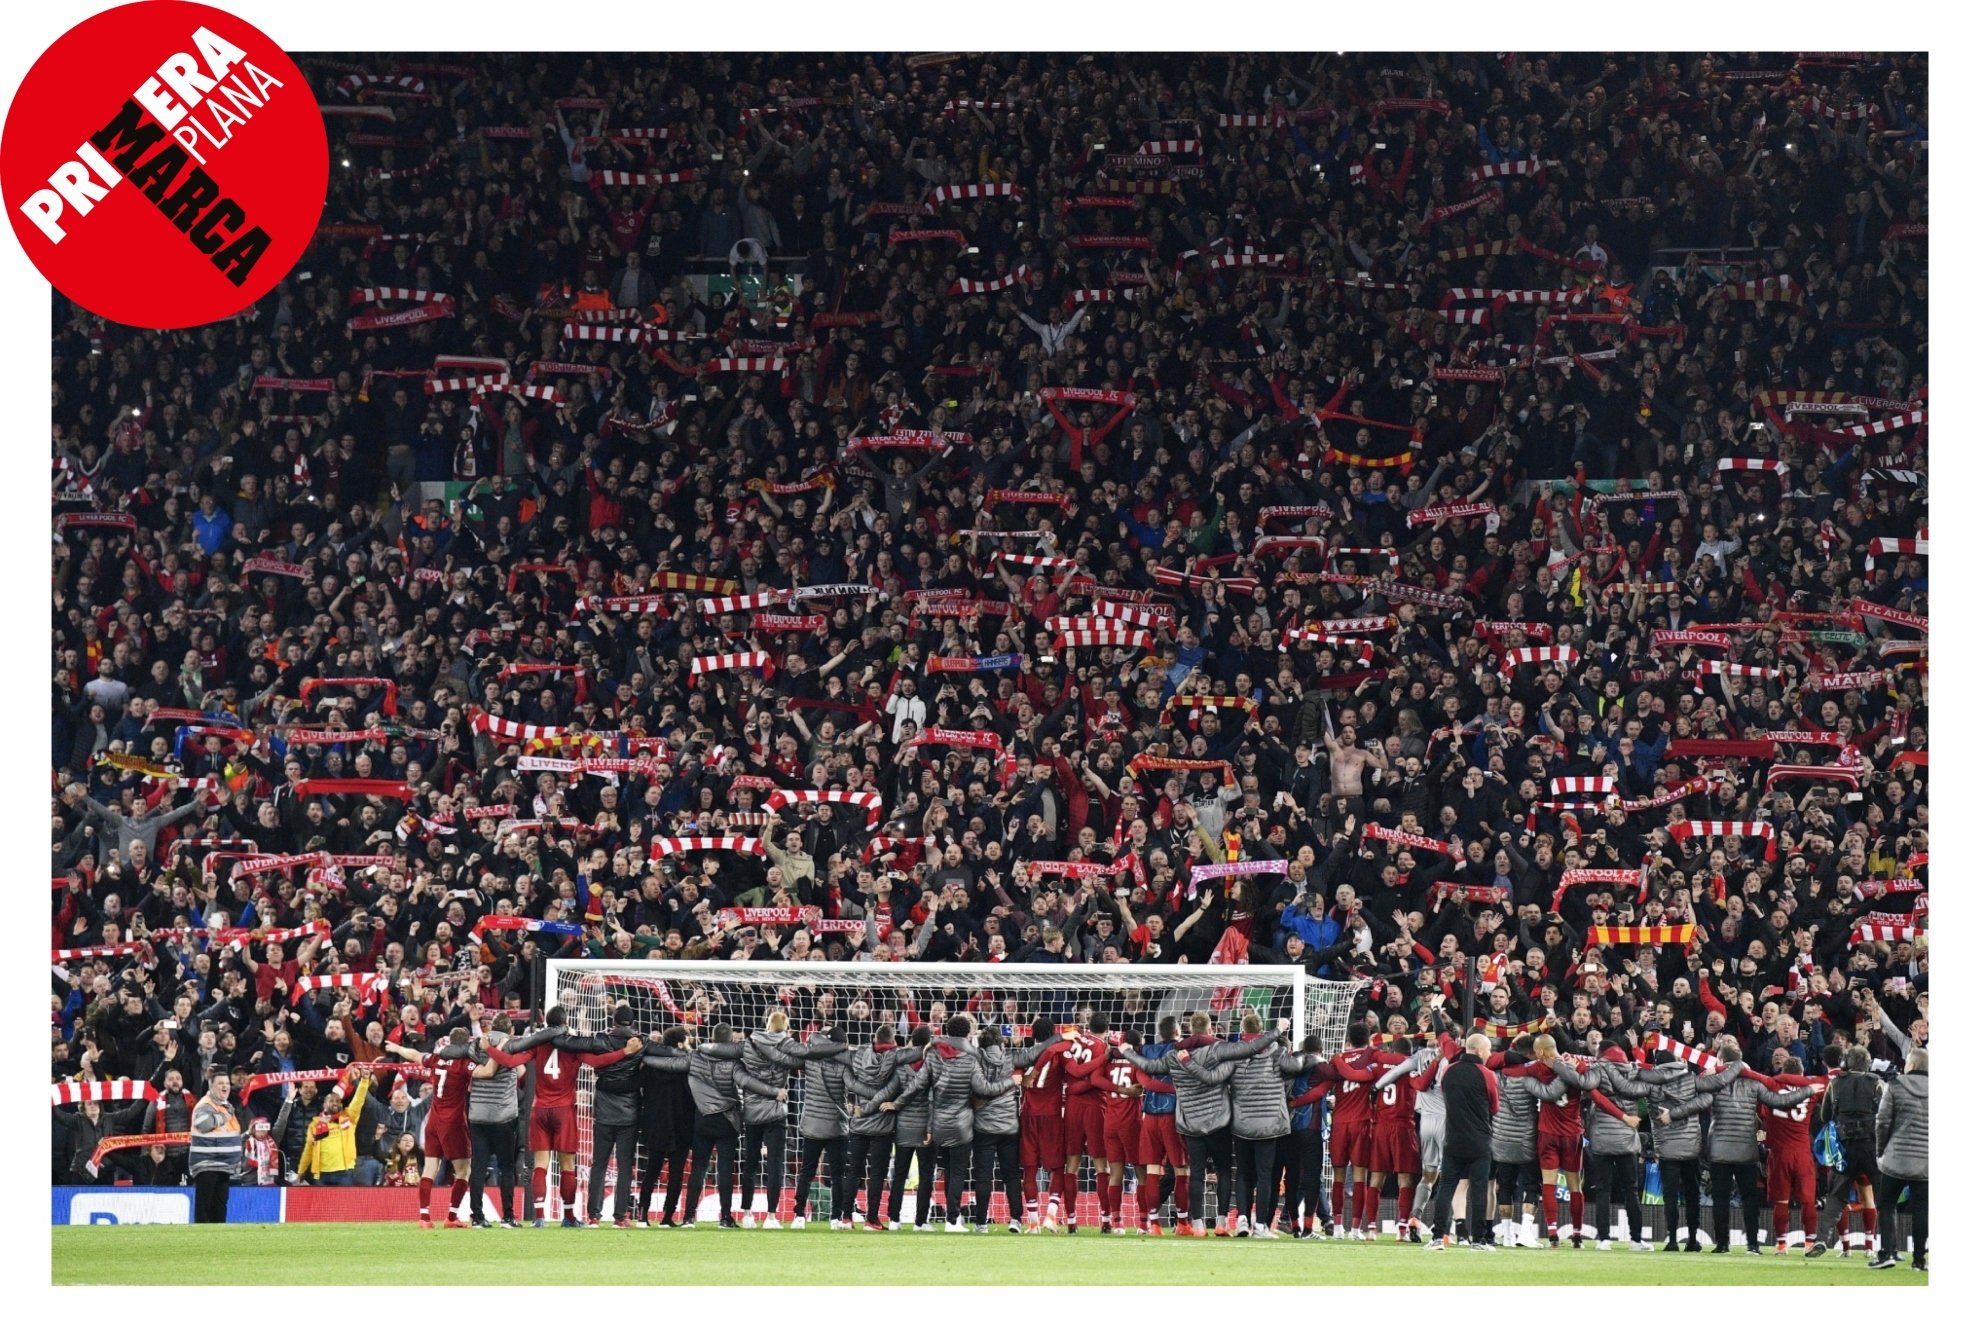 El indescriptible ambiente en Anfield: "La atmsfera que rodea al partido es diferente a todas"